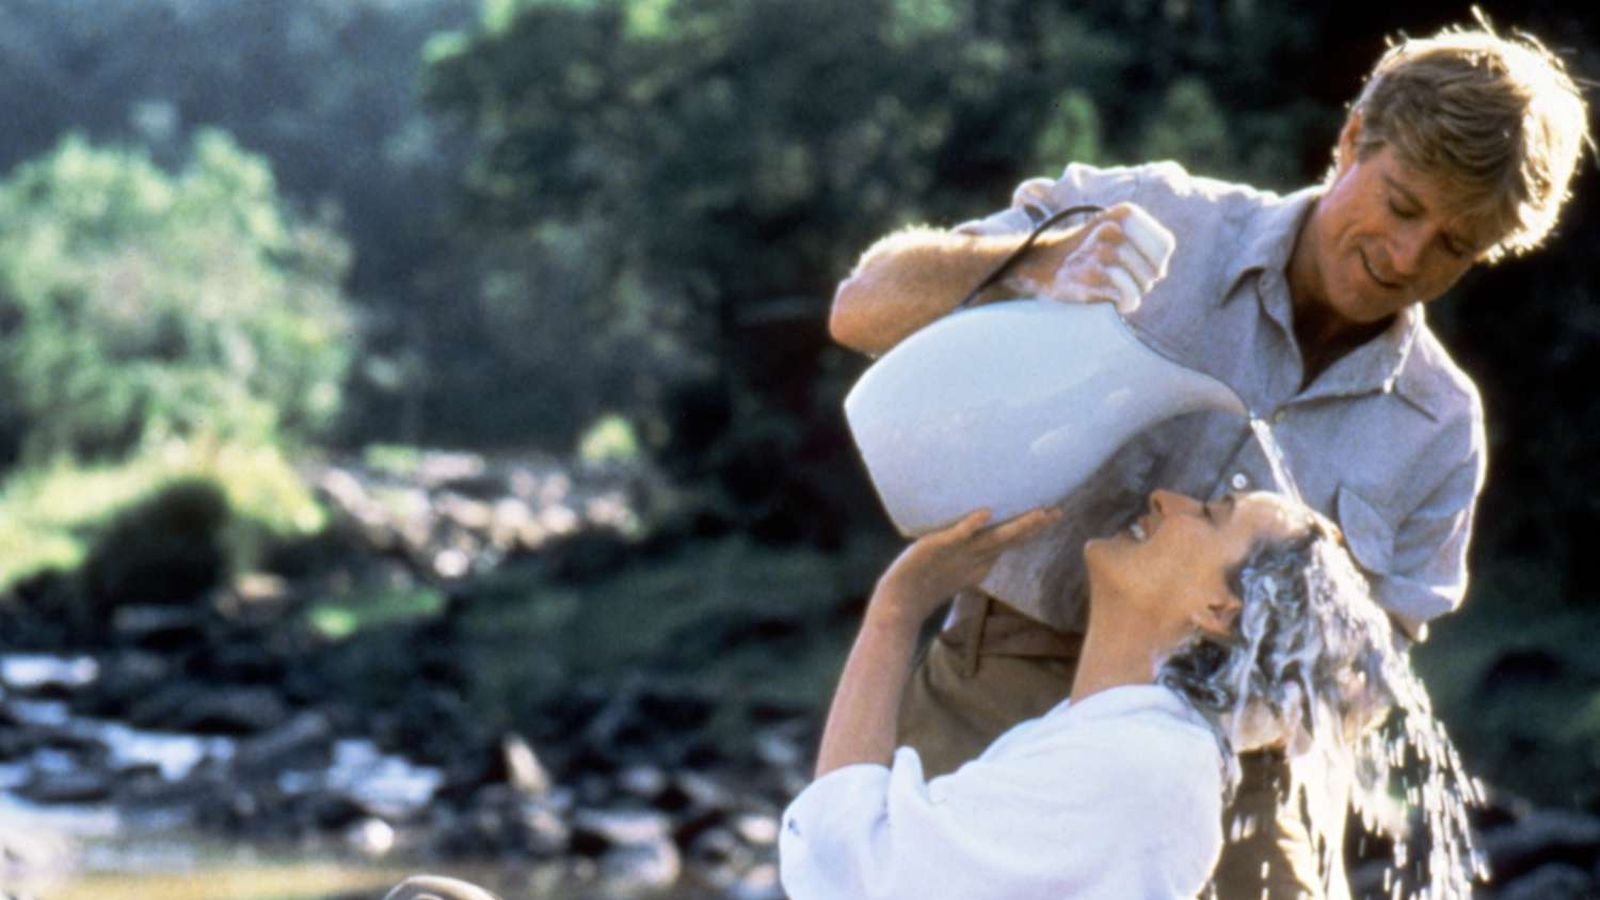 La mia Africa, Meryl Streep ricorda quando Robert Redford le lavò i capelli nel fiume 'Non volevo che finisse'